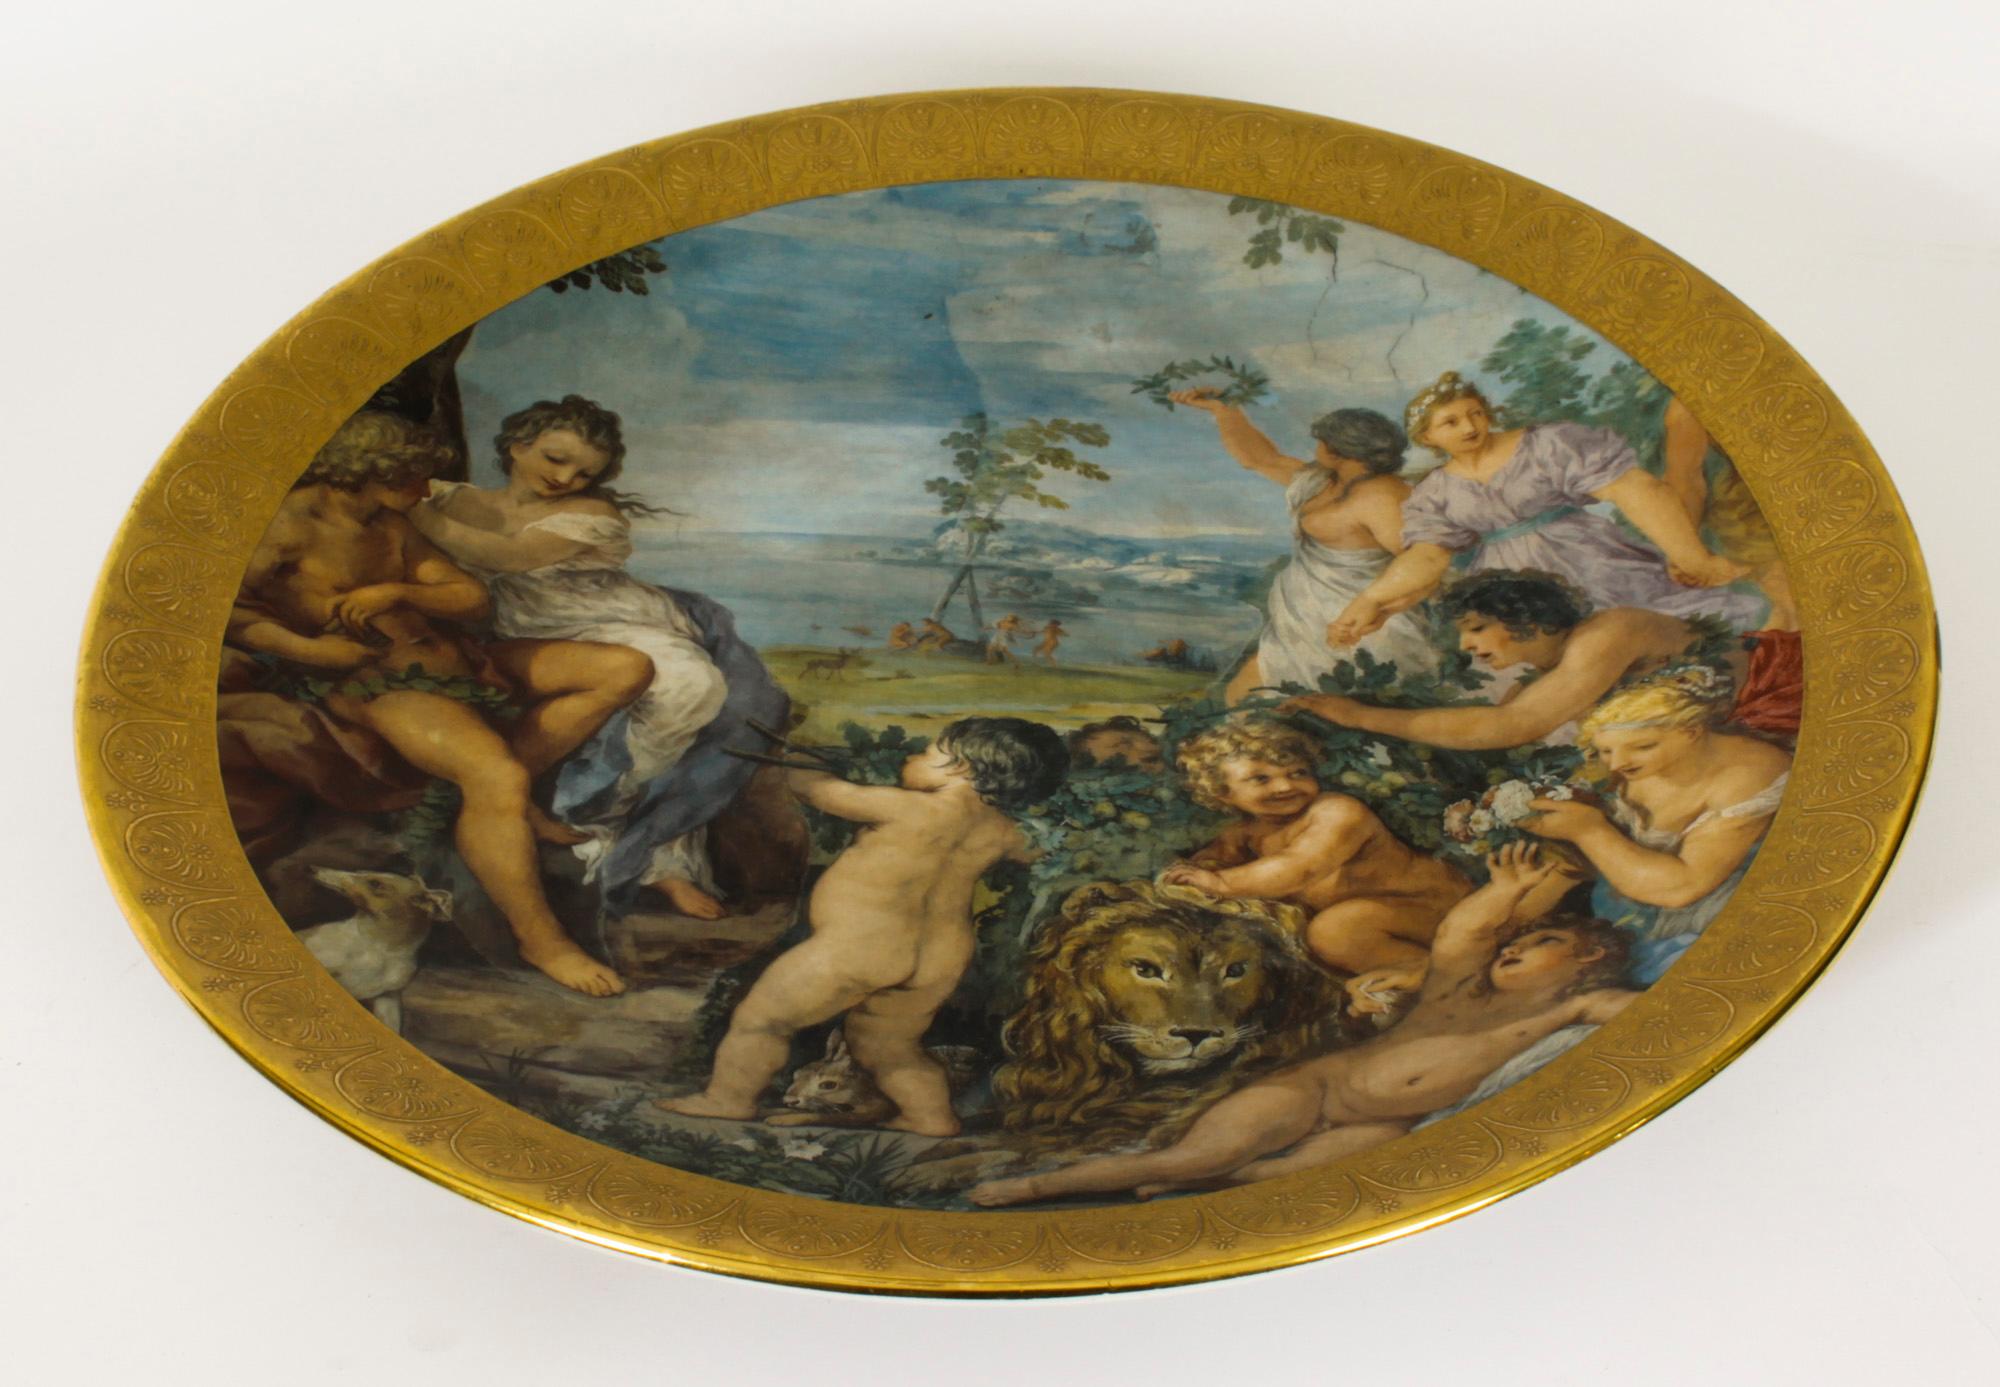 Il s'agit d'un magnifique chargeur en porcelaine italienne, datant de 1950 environ.

Cette scène colorée et décorative représente un groupe de jeunes filles et de chérubins insouciants avec un lion dans un cadre gaufré et doré.

Le chargeur